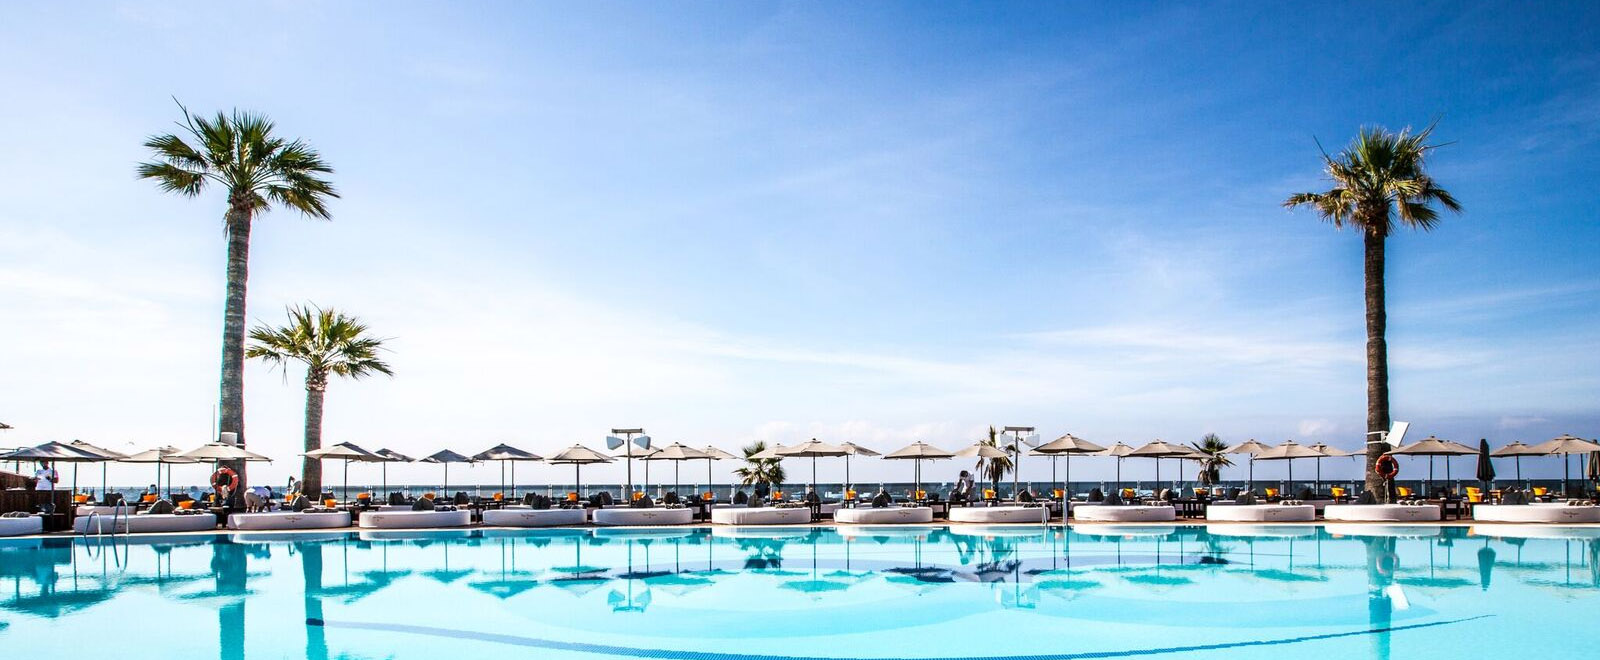 La Costa del Sol et ses clubs de plage les plus representatifs - Marbella Unique Properties - Ocean club